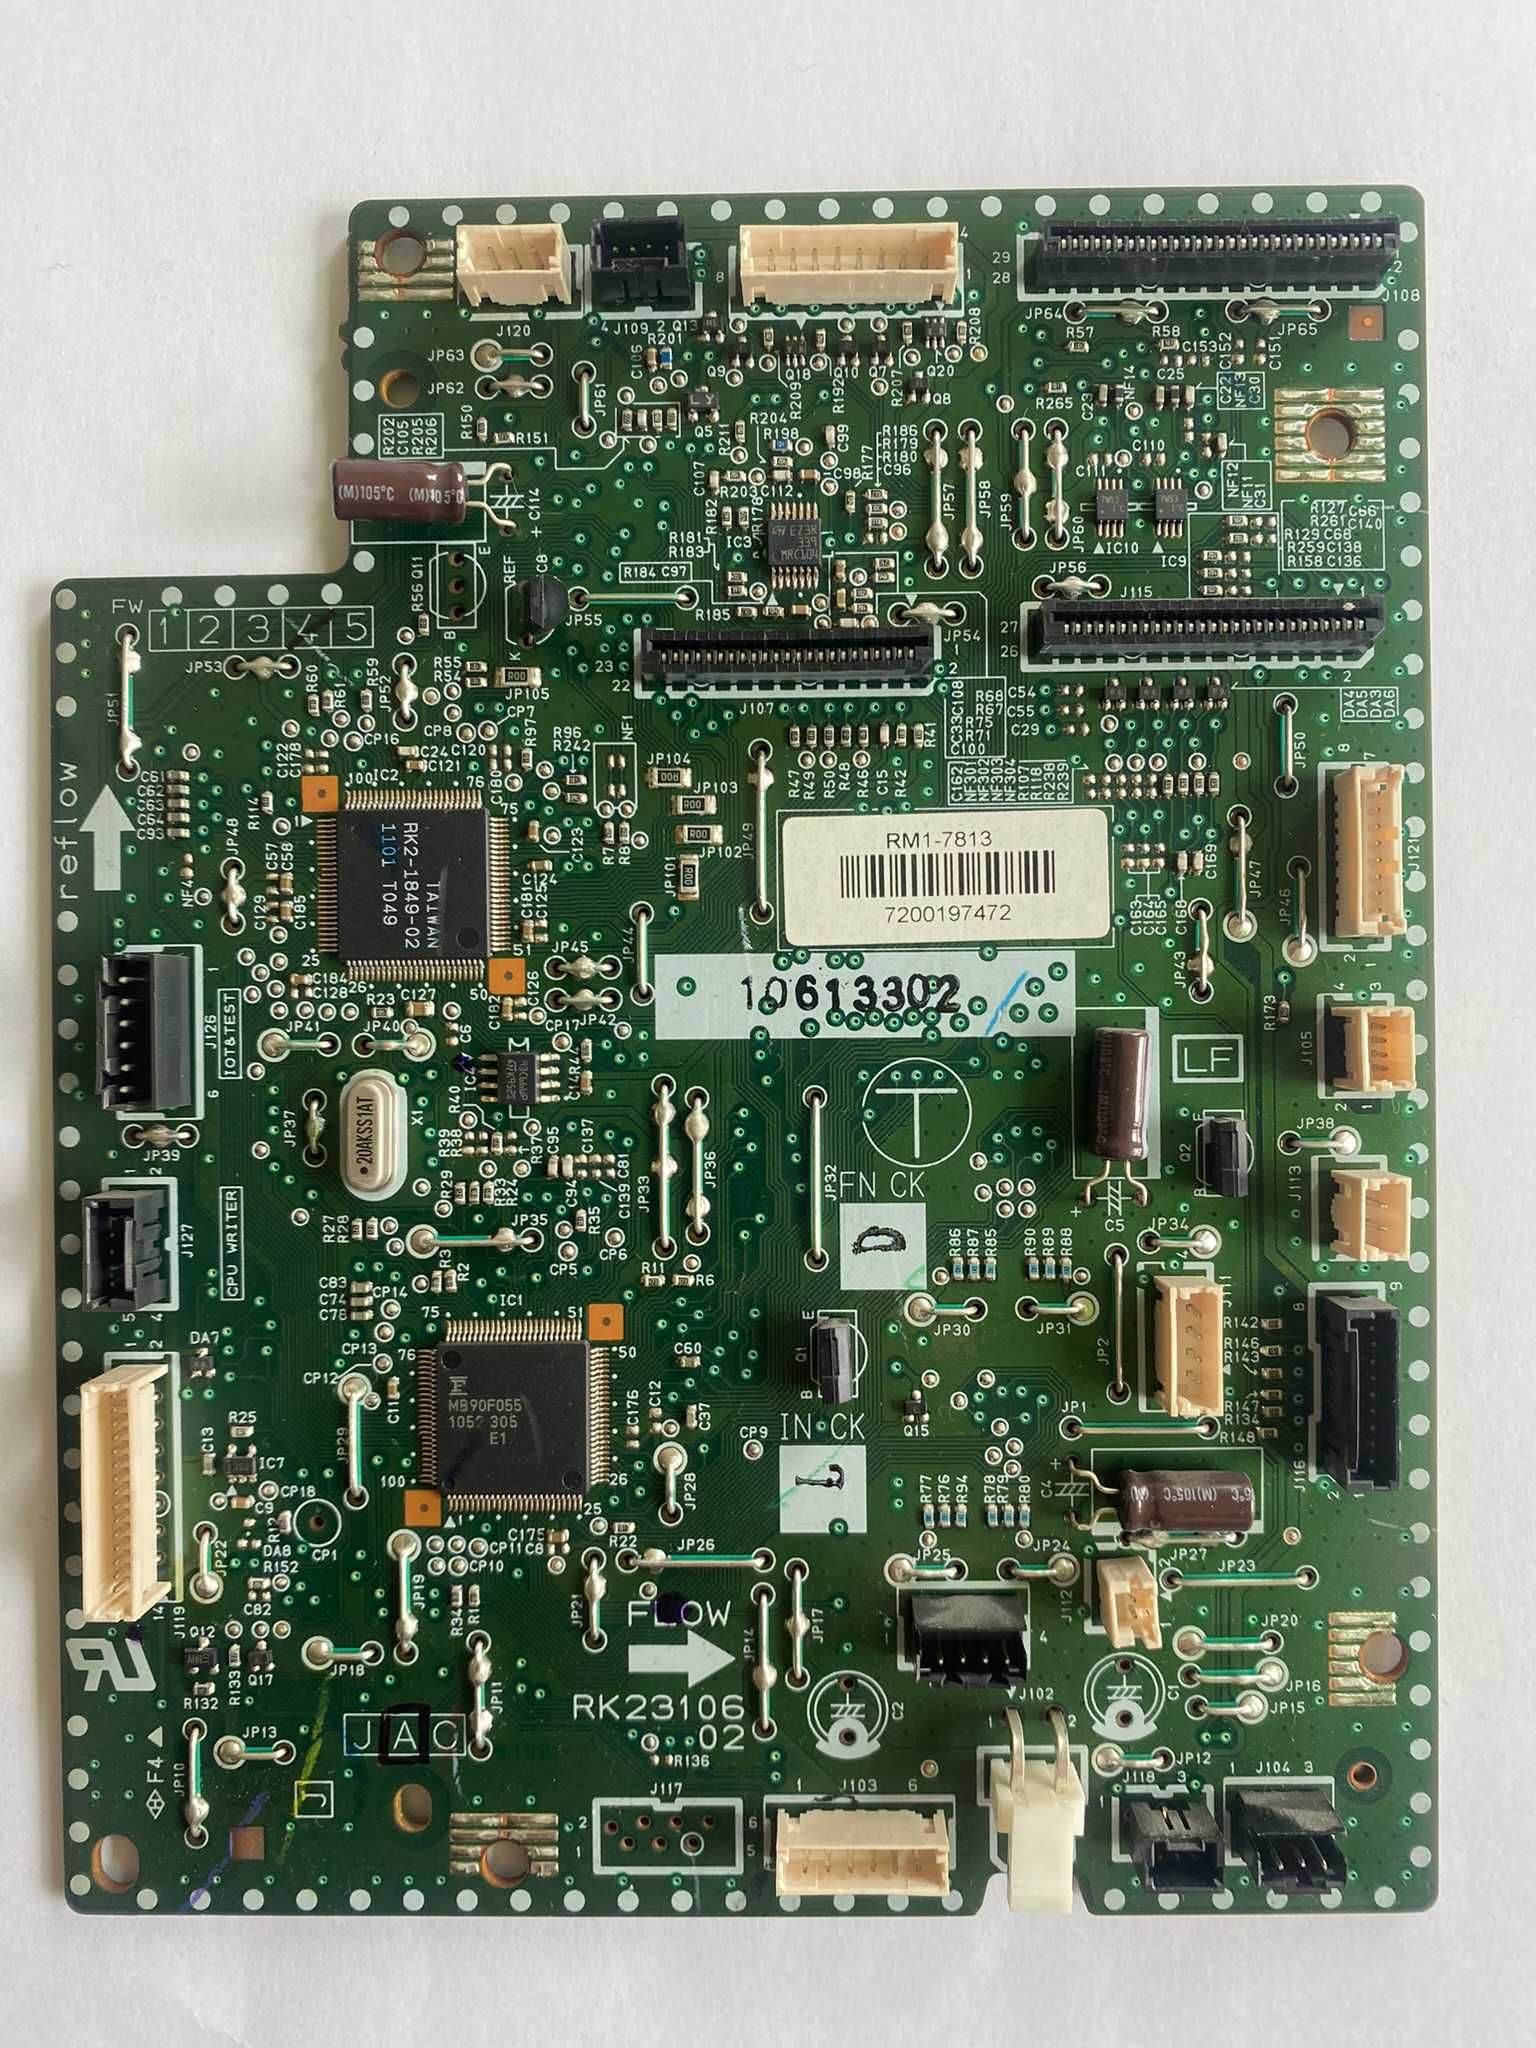 HP płyta CM1415 RM1-7813